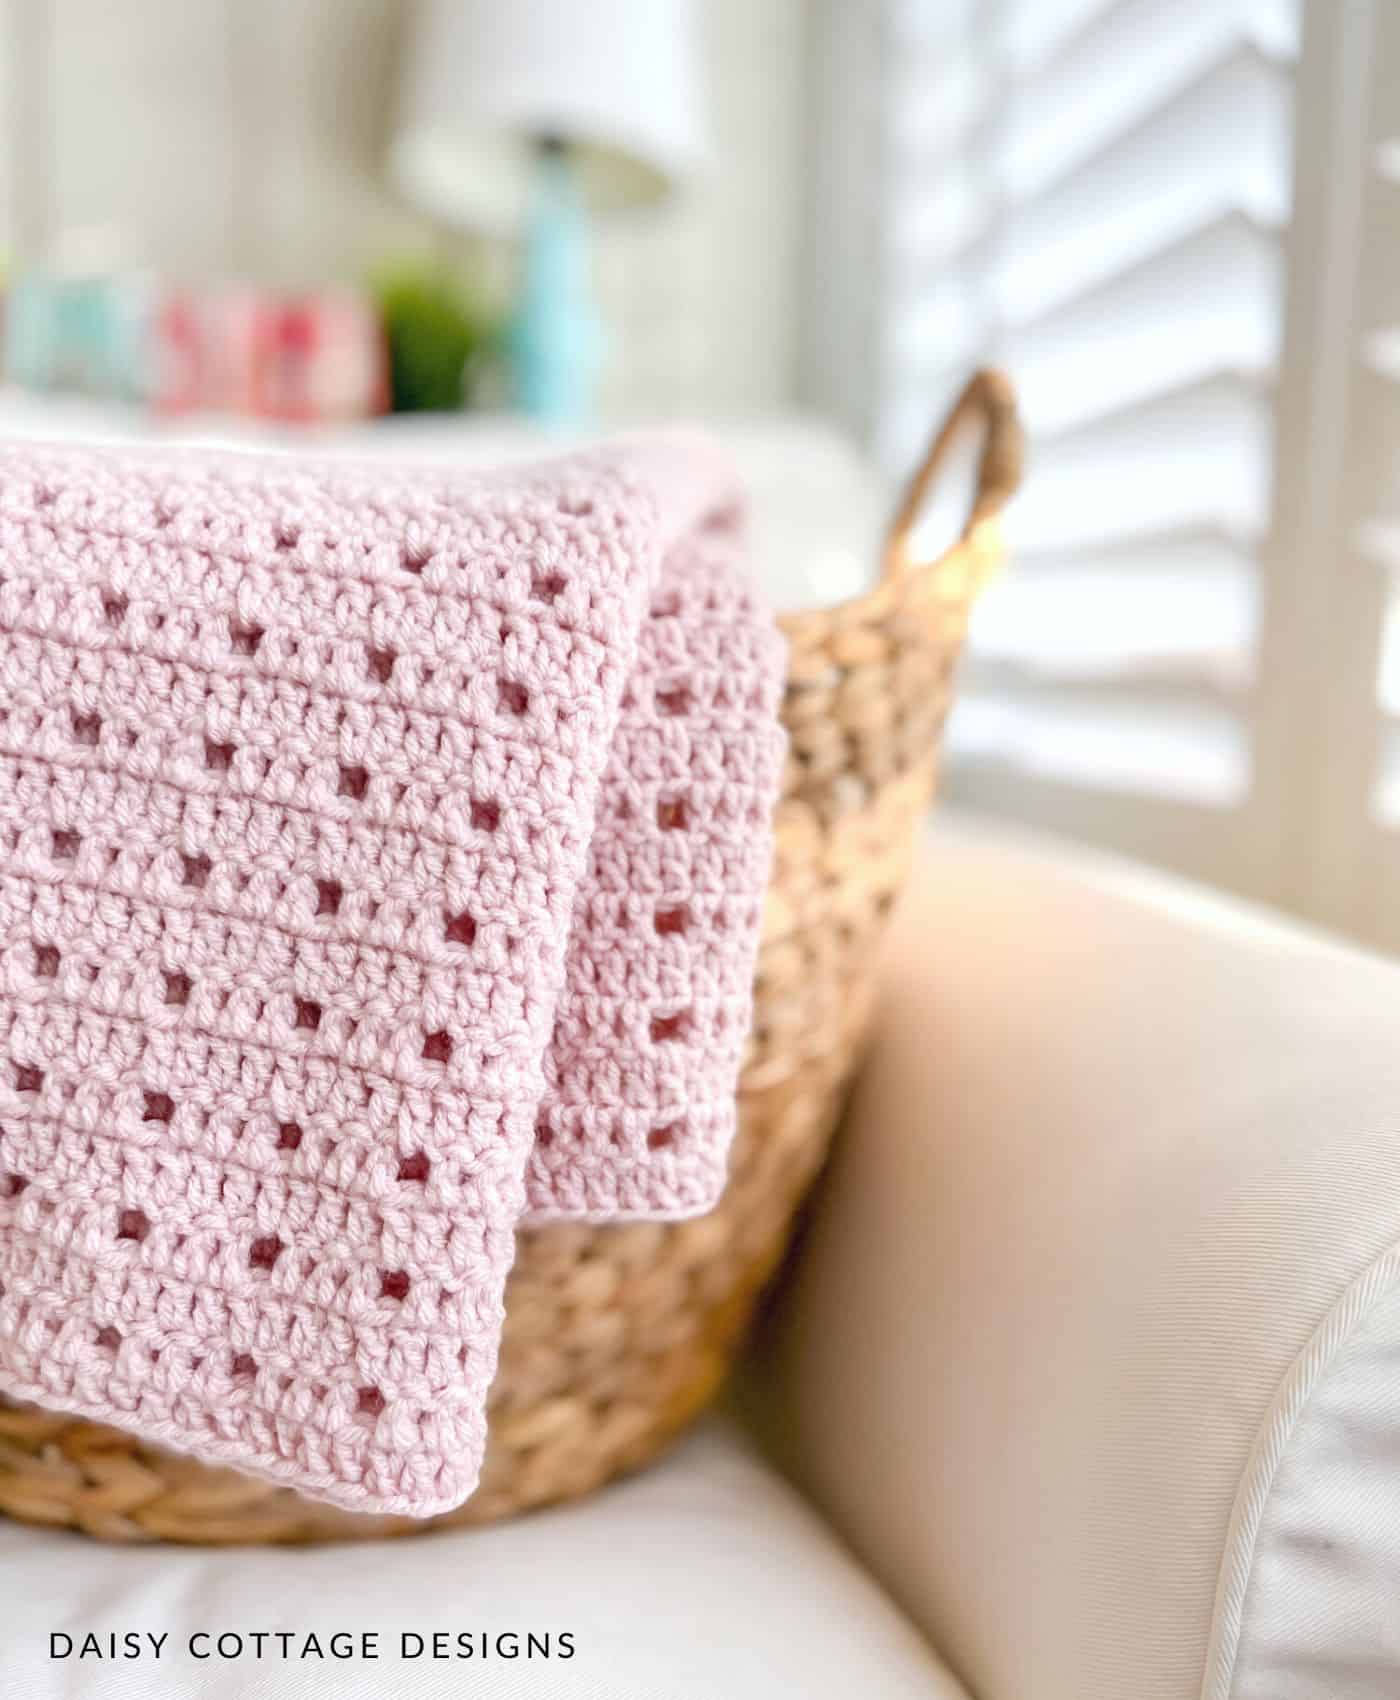 Pink crochet blanket over basket